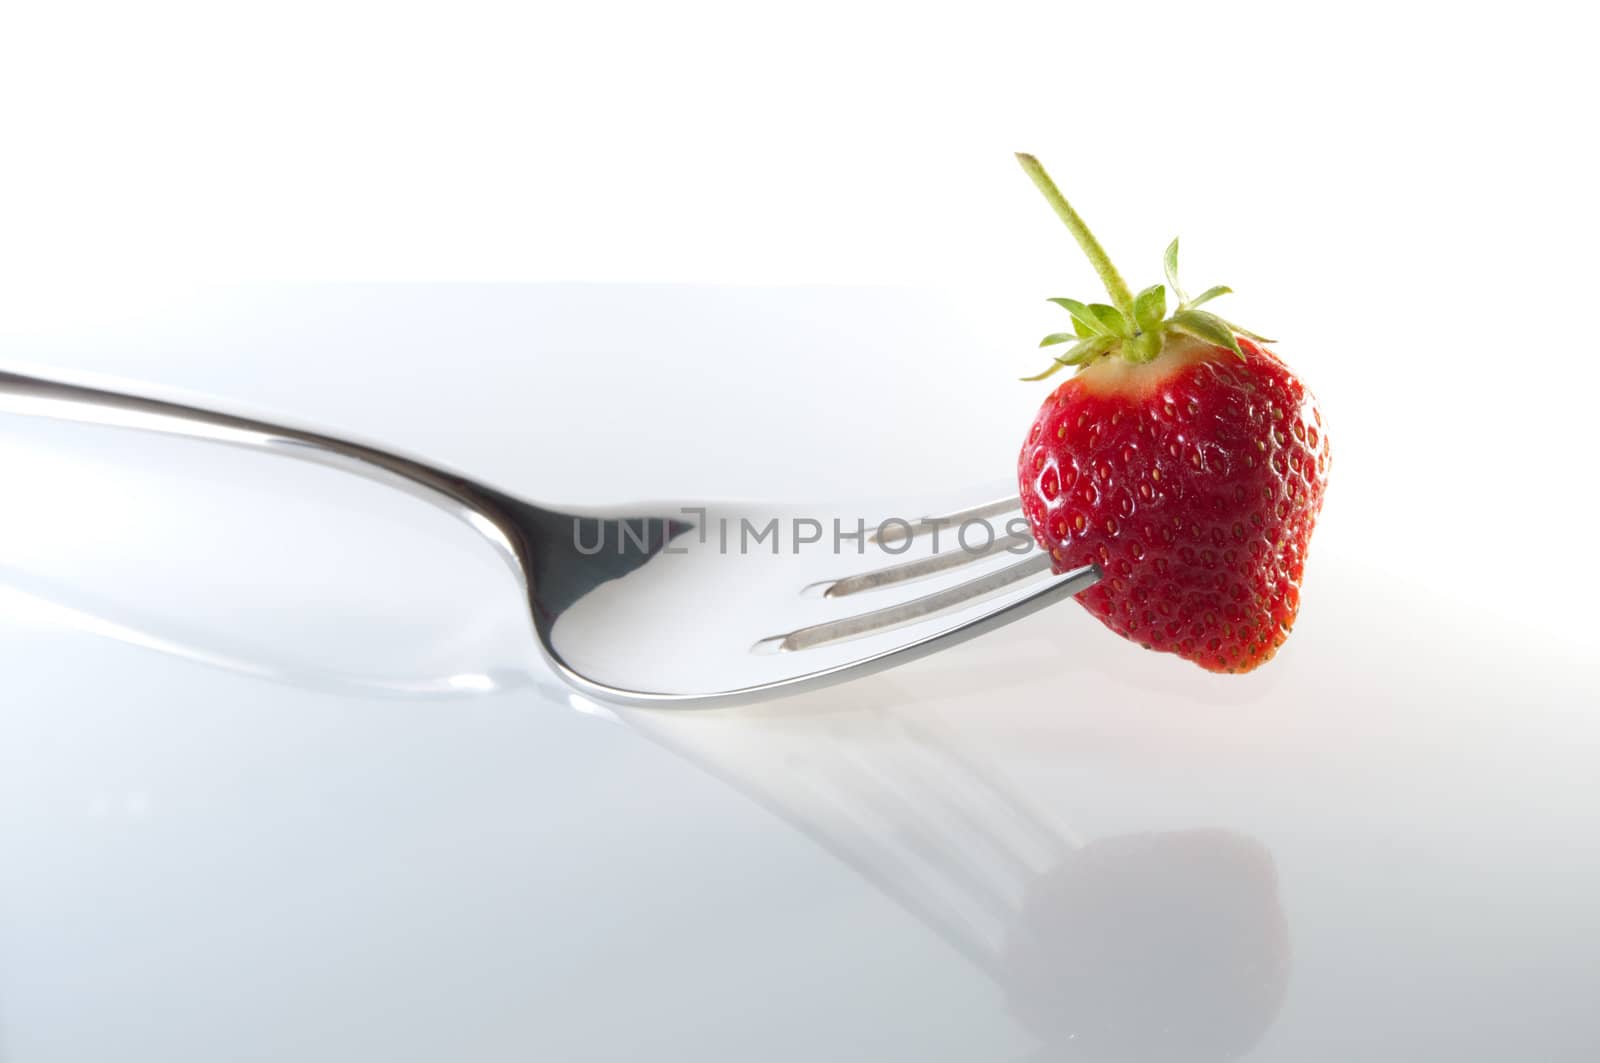 Strawberry wiht fork by franz_hein